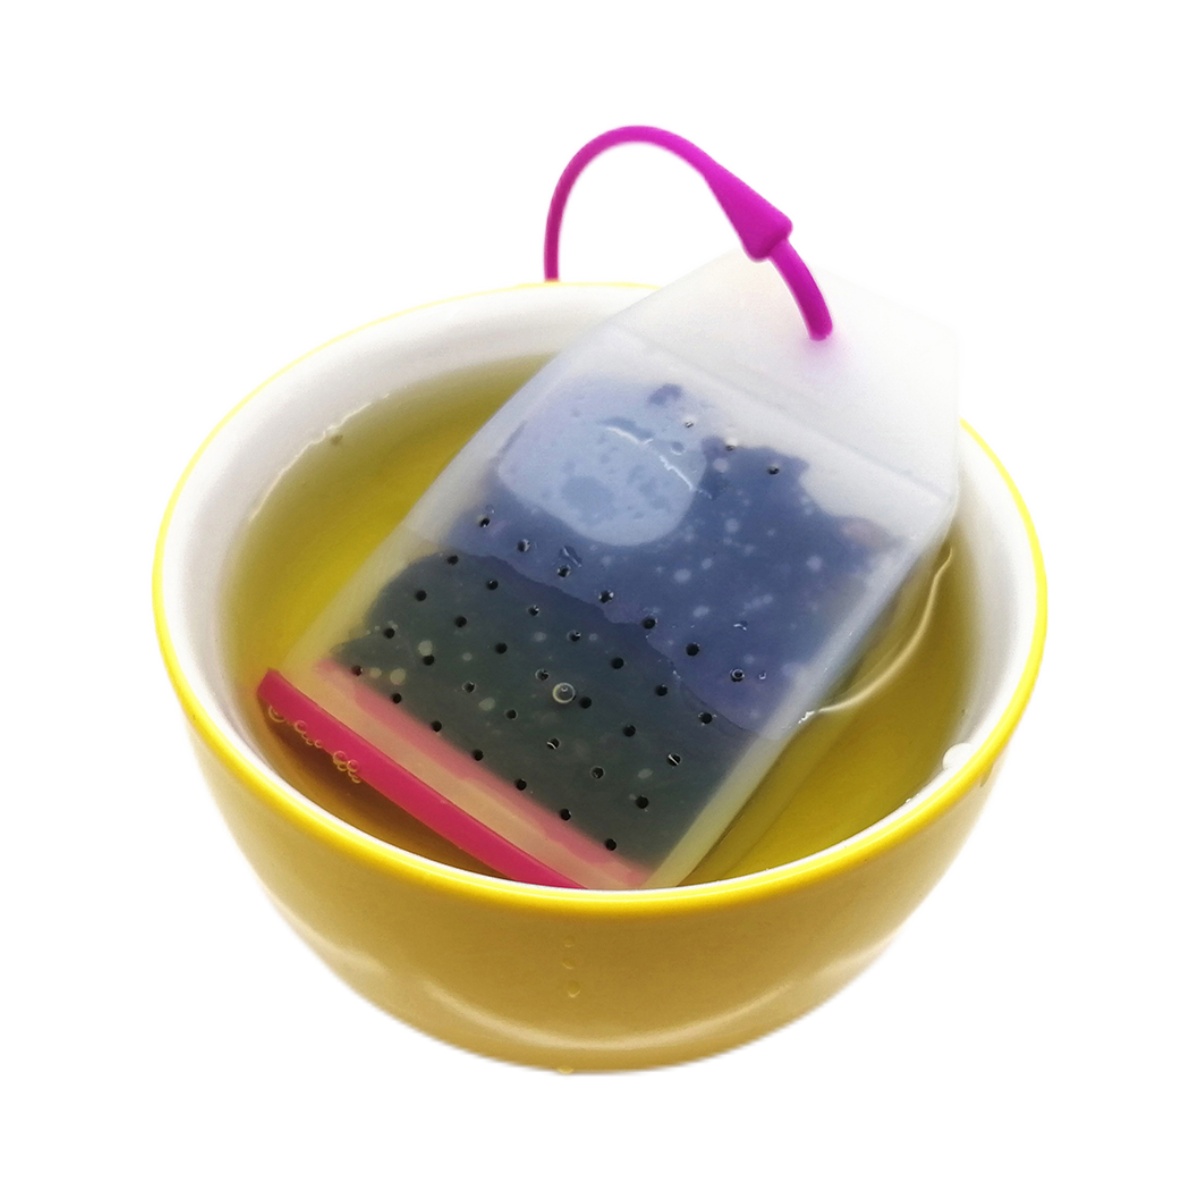 Filtros desechables para té e infusiones, de If you care